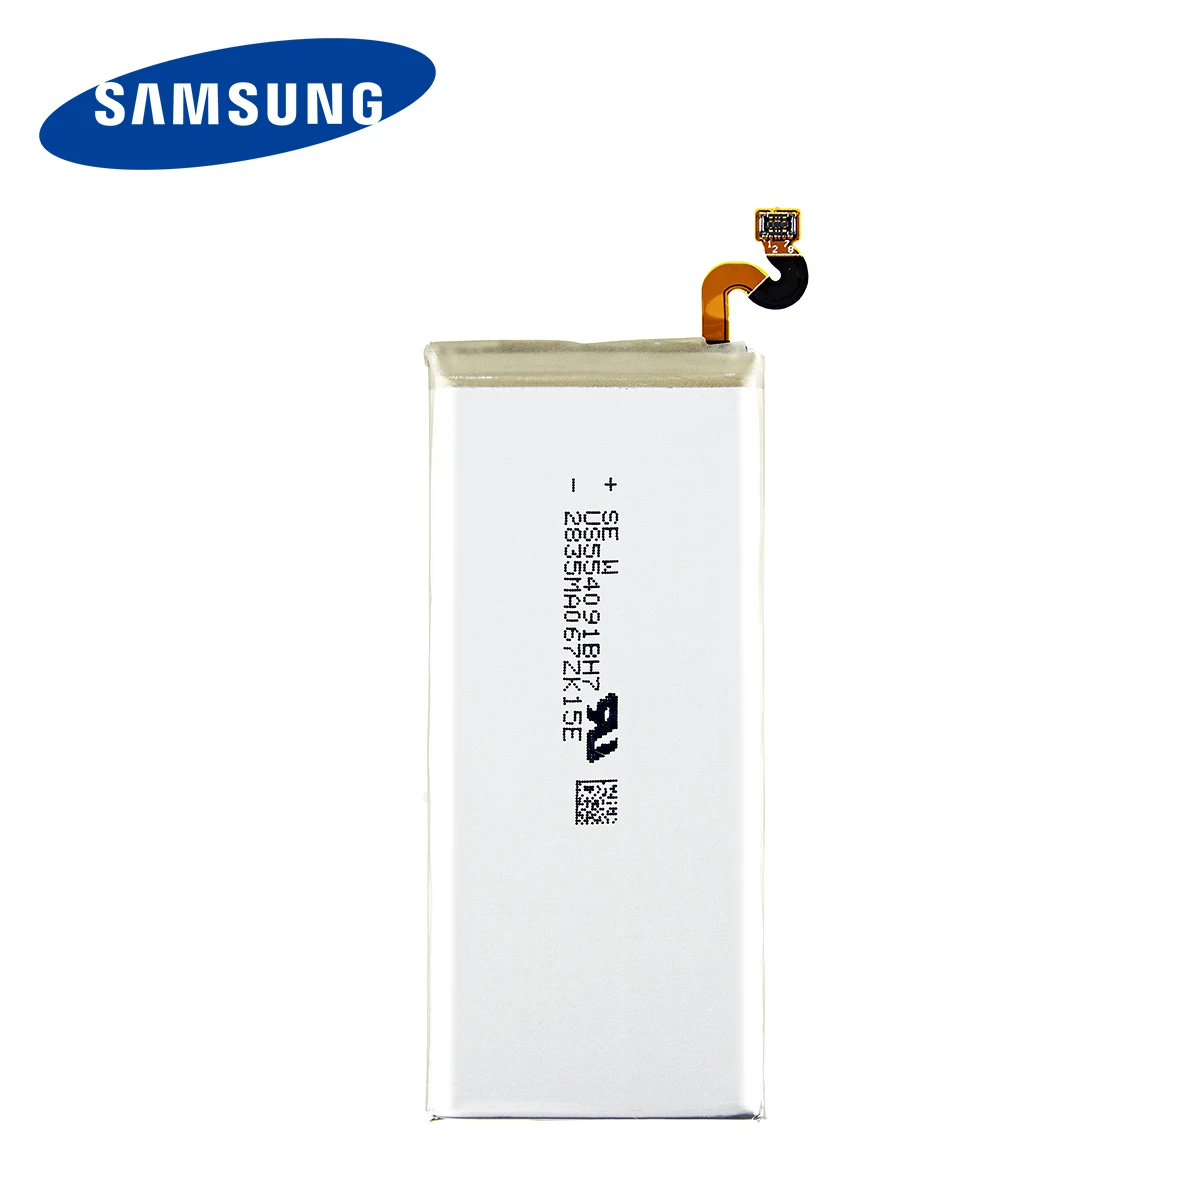 SAMSUNG оригинальная EB-BN950ABA EB-BN950ABE 3300 мА/ч батарея для Samsung GALAXY Note 8 N9500 N9508 SM-N950 N950F N950U